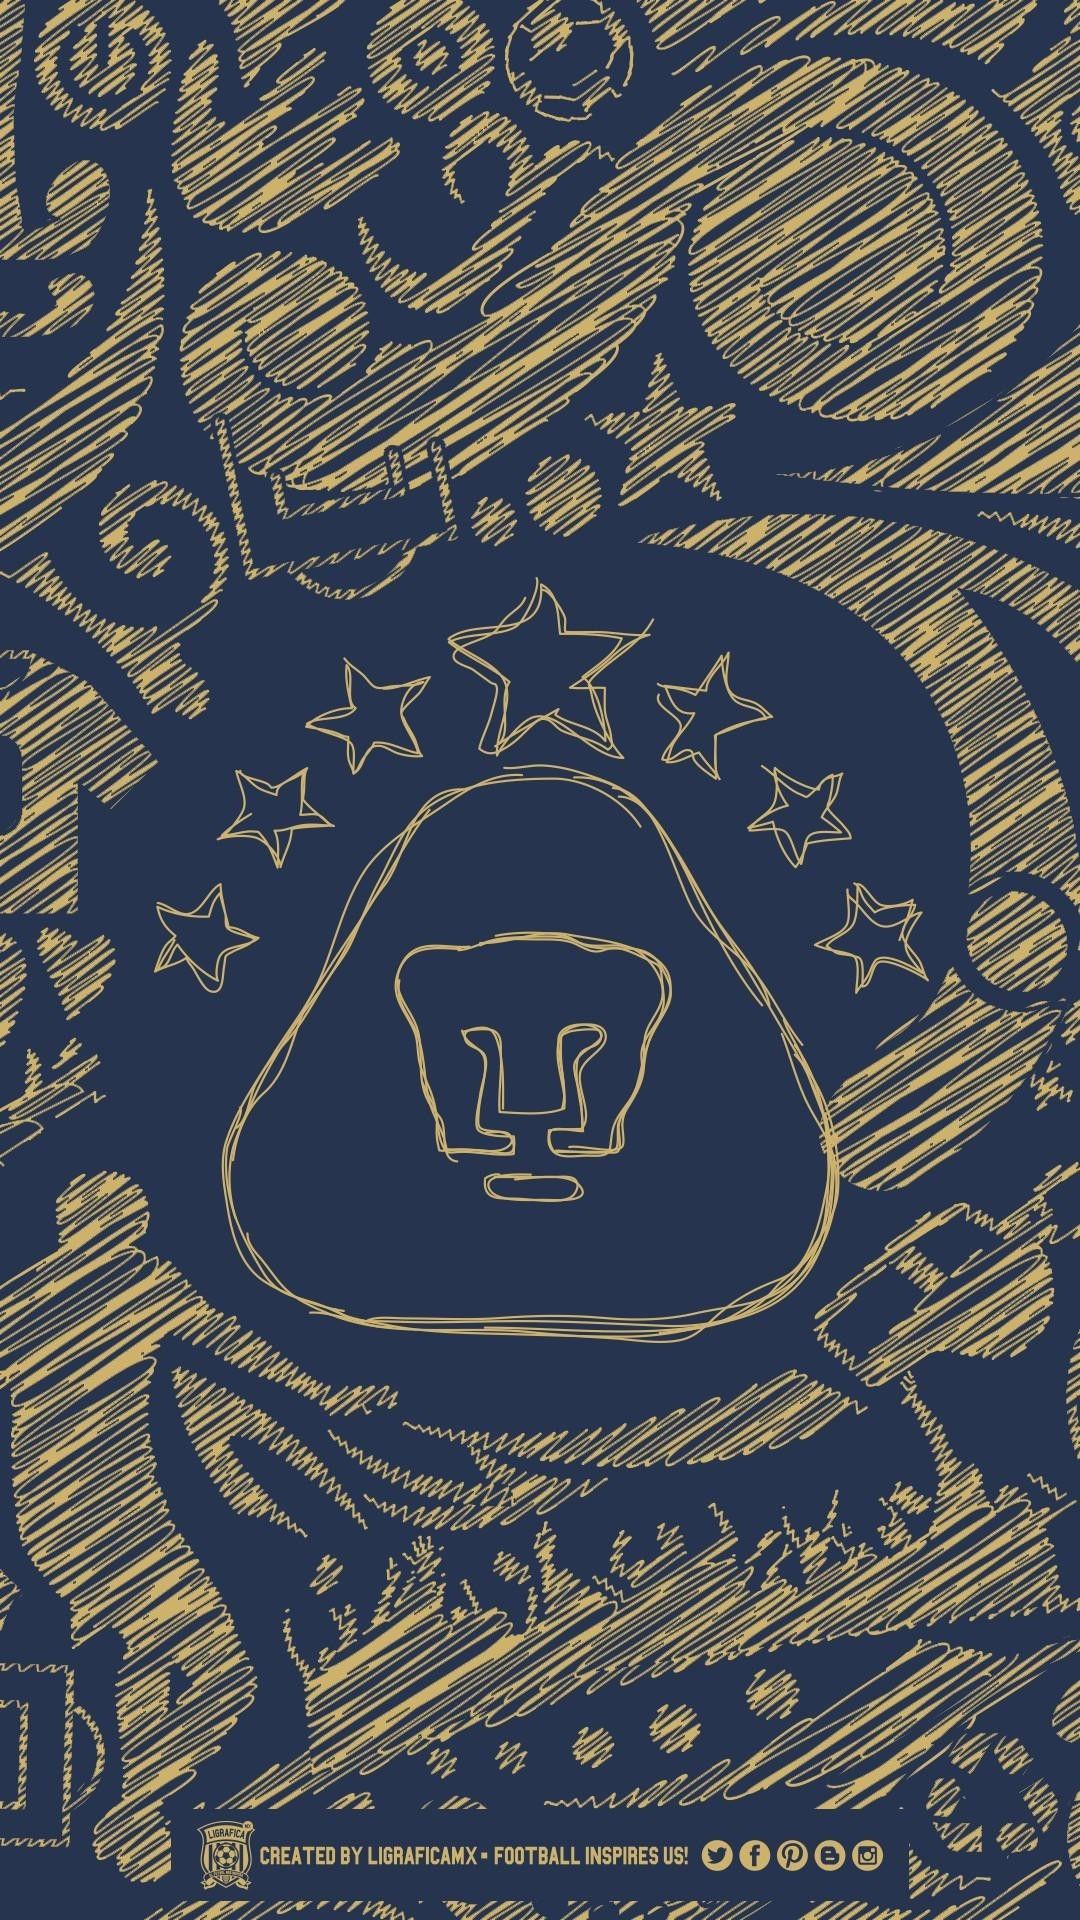 Pumas Unam Logo Wallpaper